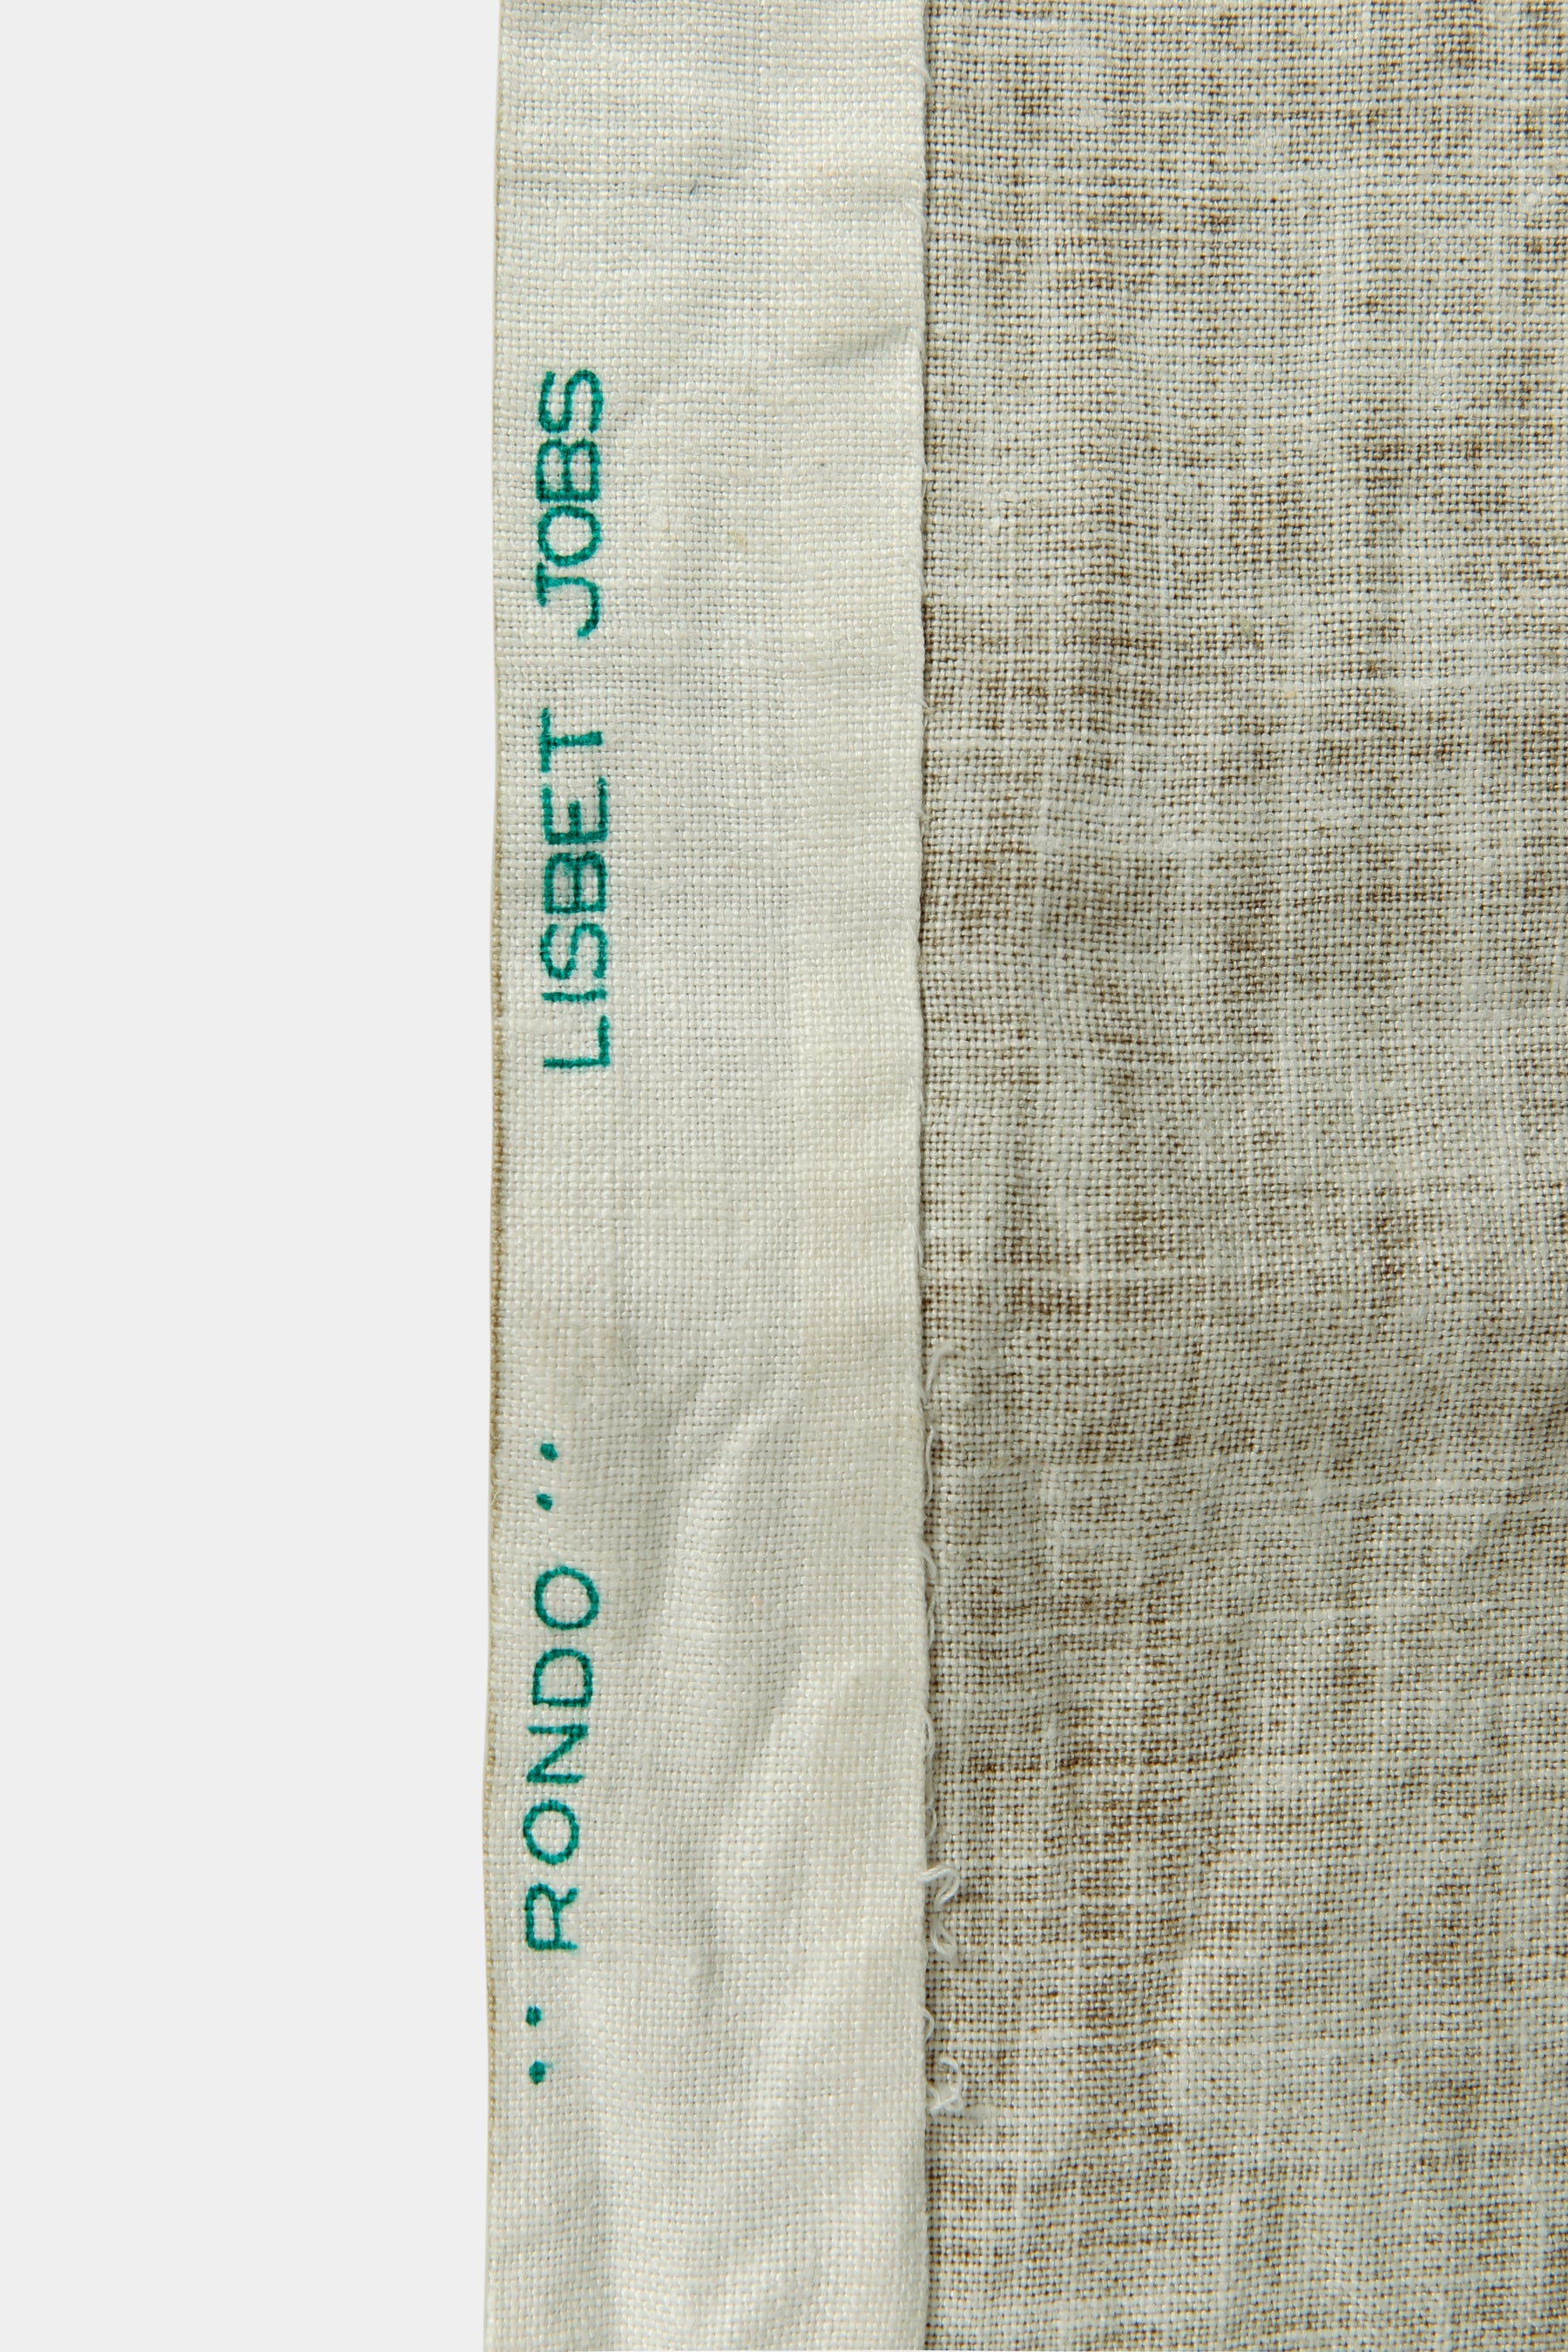 Tablecloth Lisbet Jobs, Leksand Sweden, 60s